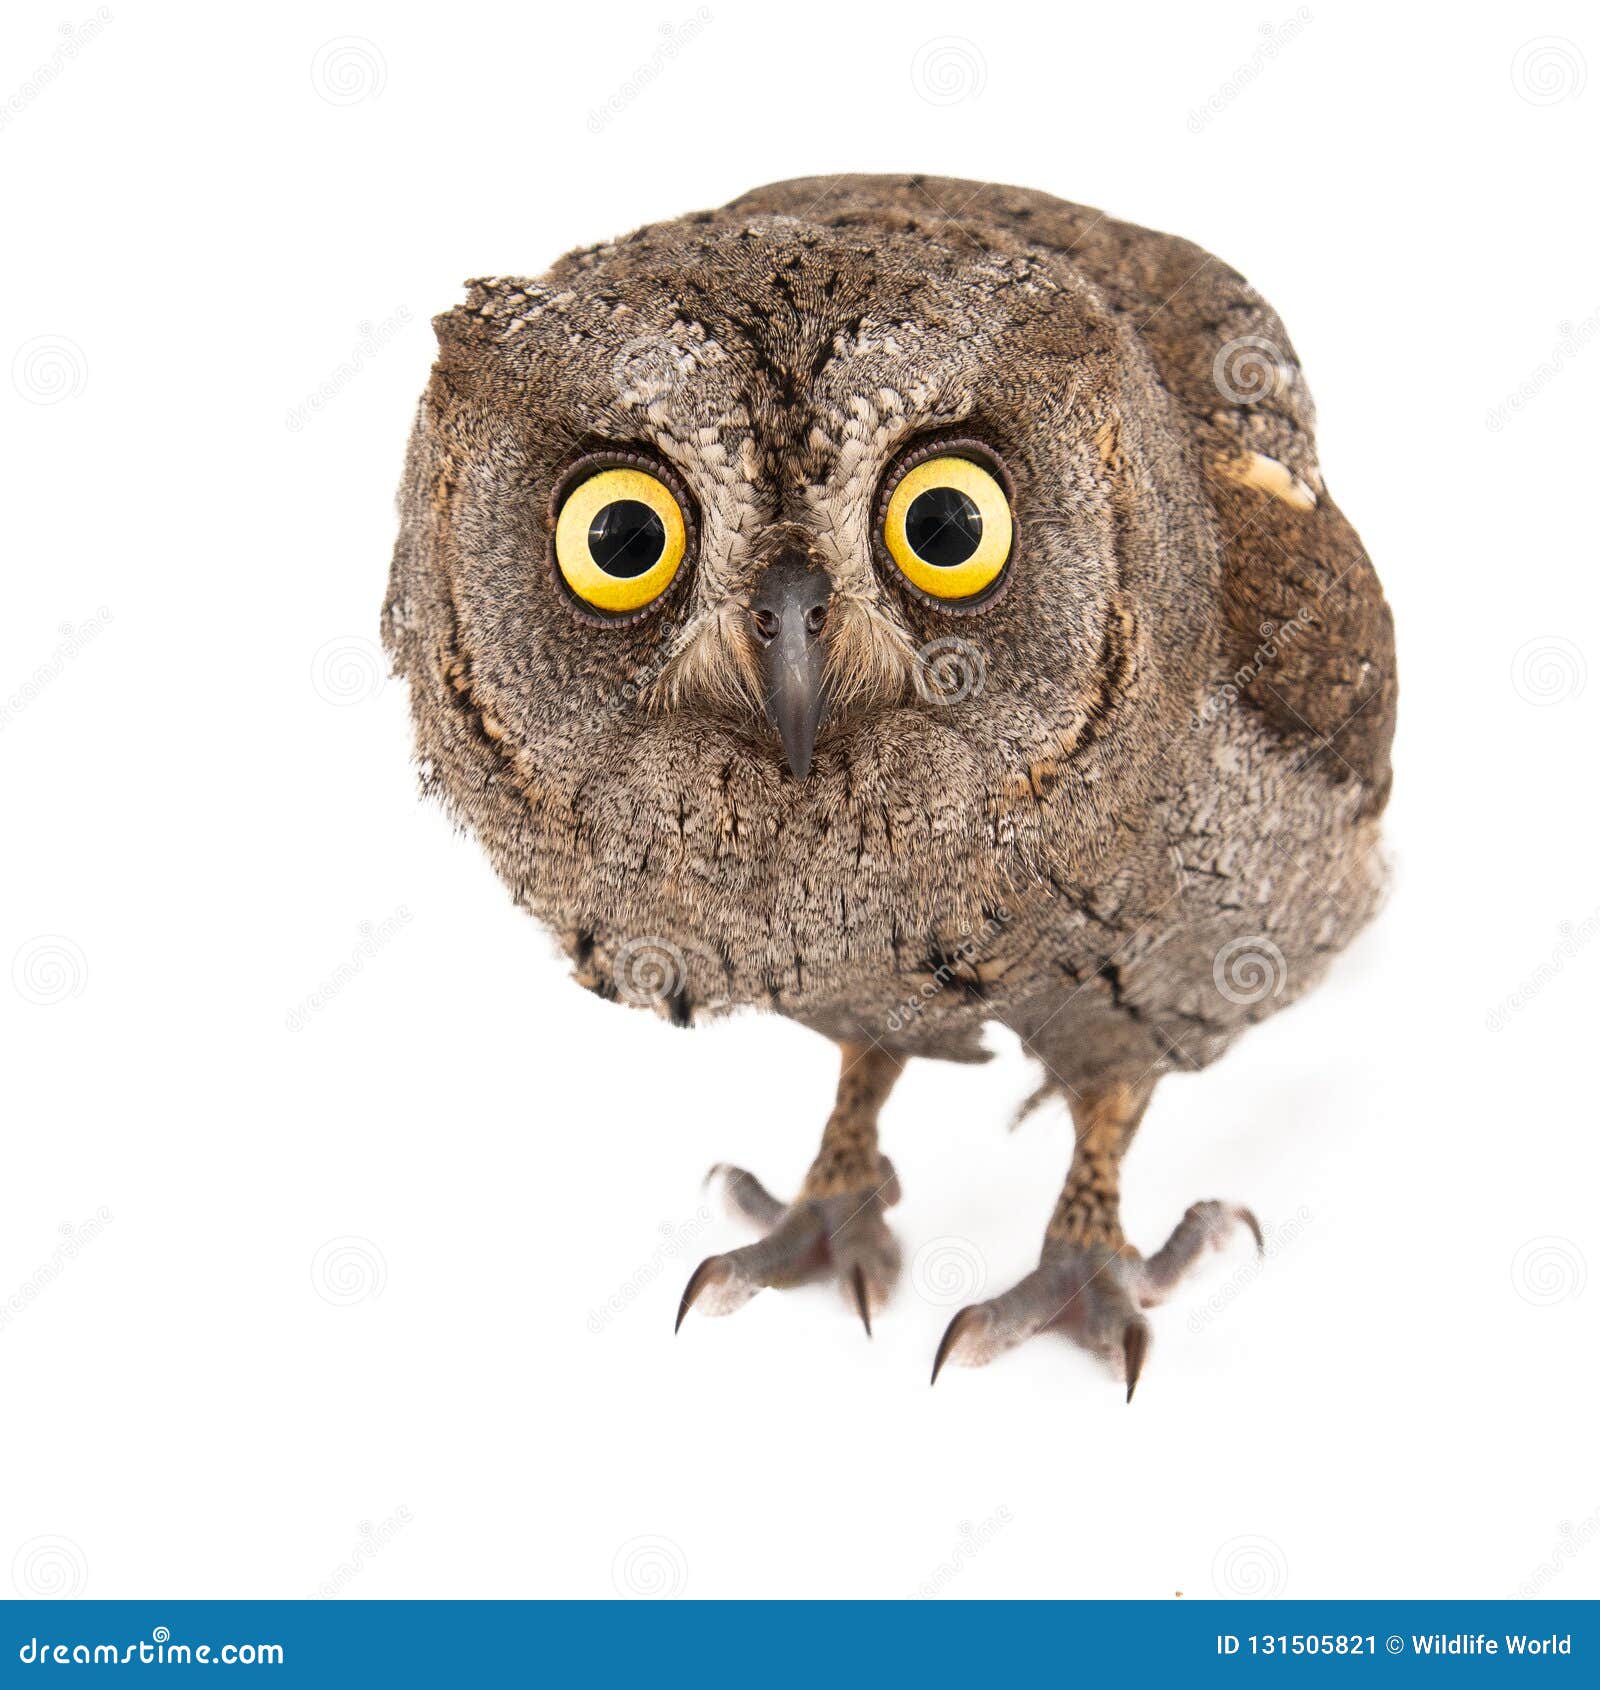 owls - european scops owl otus scops  on white background